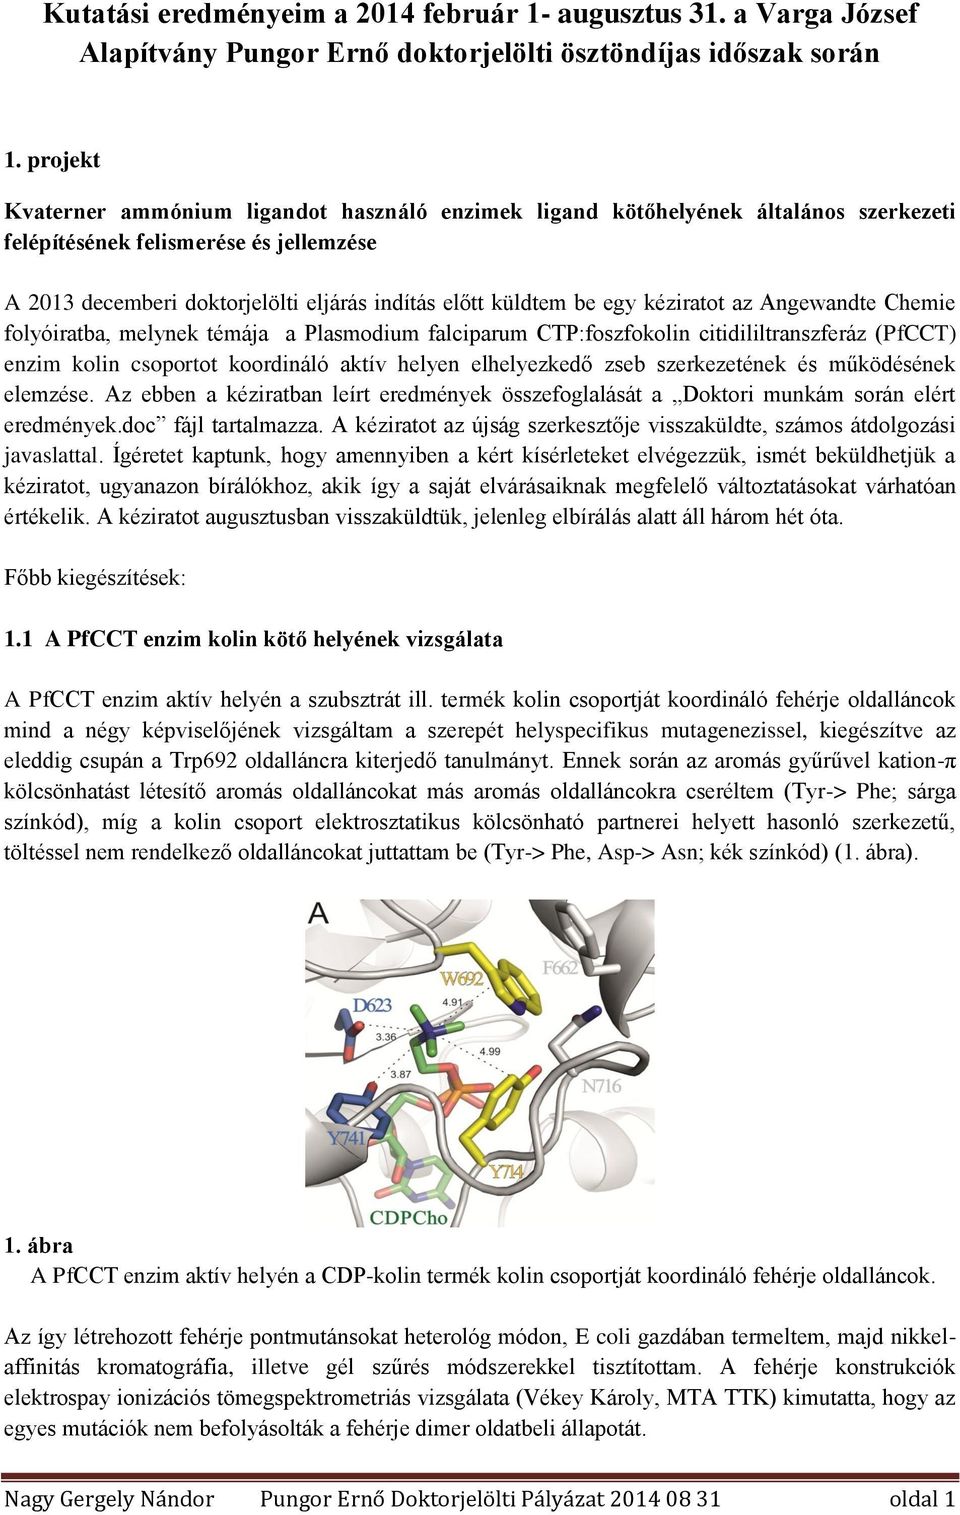 egy kéziratot az Angewandte Chemie folyóiratba, melynek témája a Plasmodium falciparum CTP:foszfokolin citidililtranszferáz (PfCCT) enzim kolin csoportot koordináló aktív helyen elhelyezkedő zseb